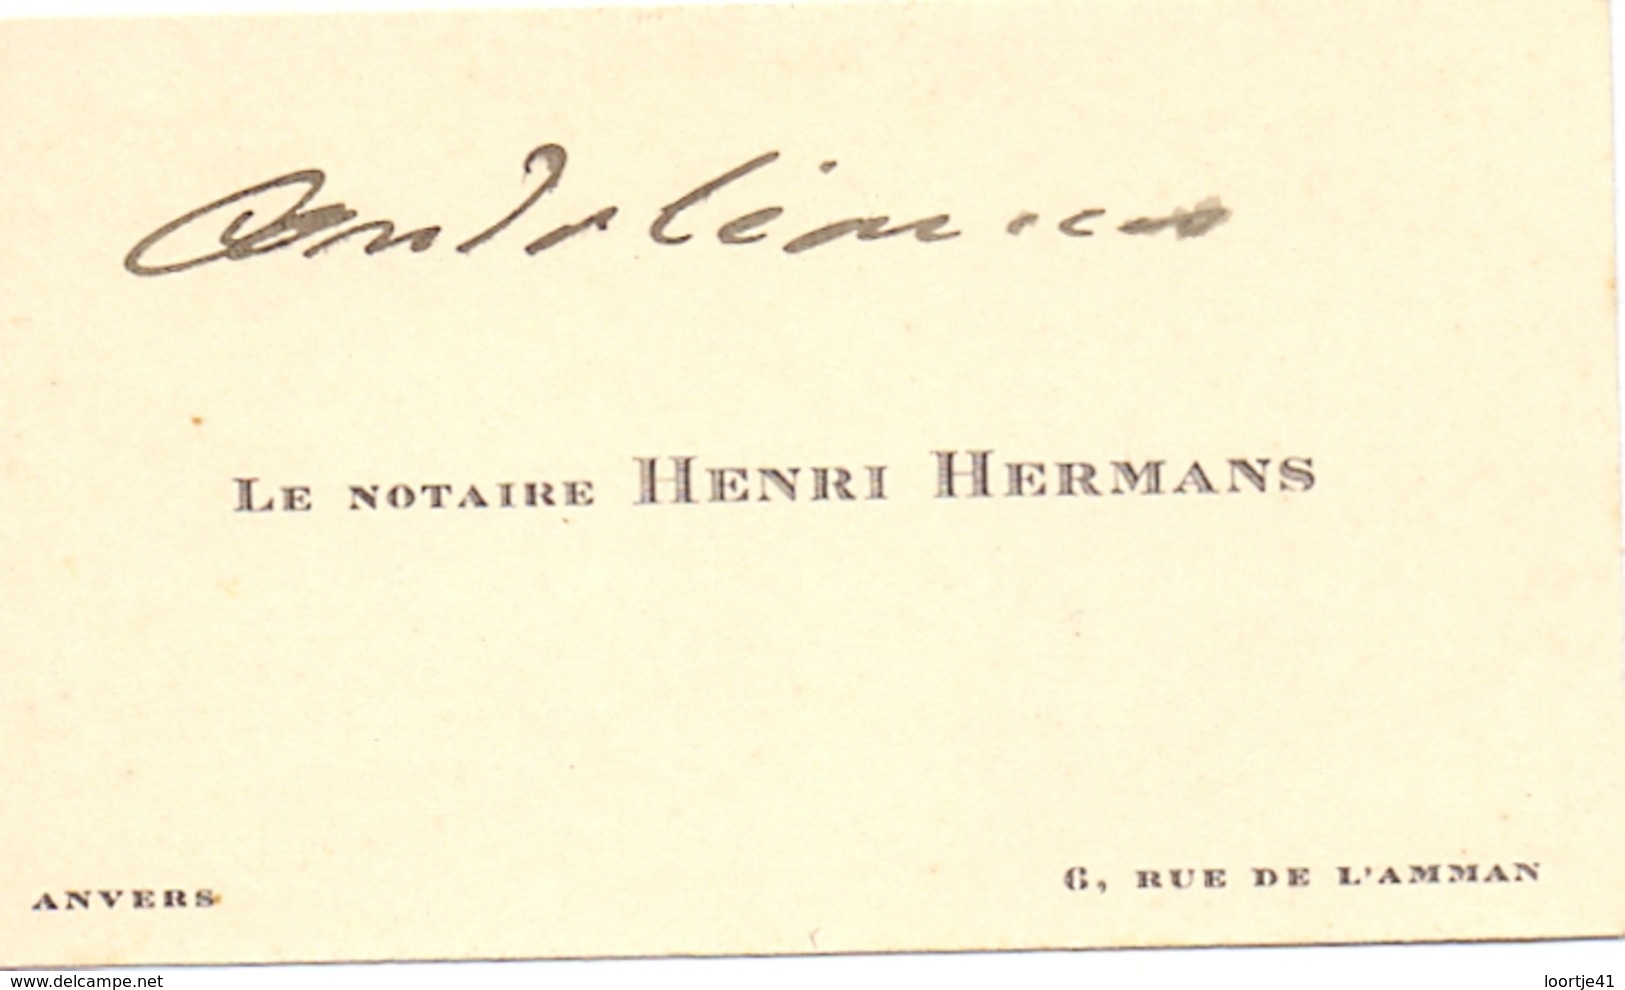 Visitekaartje - Carte Visite - Notaris Notaire Henri Hermans - Anvers Antwerpen - Cartes De Visite